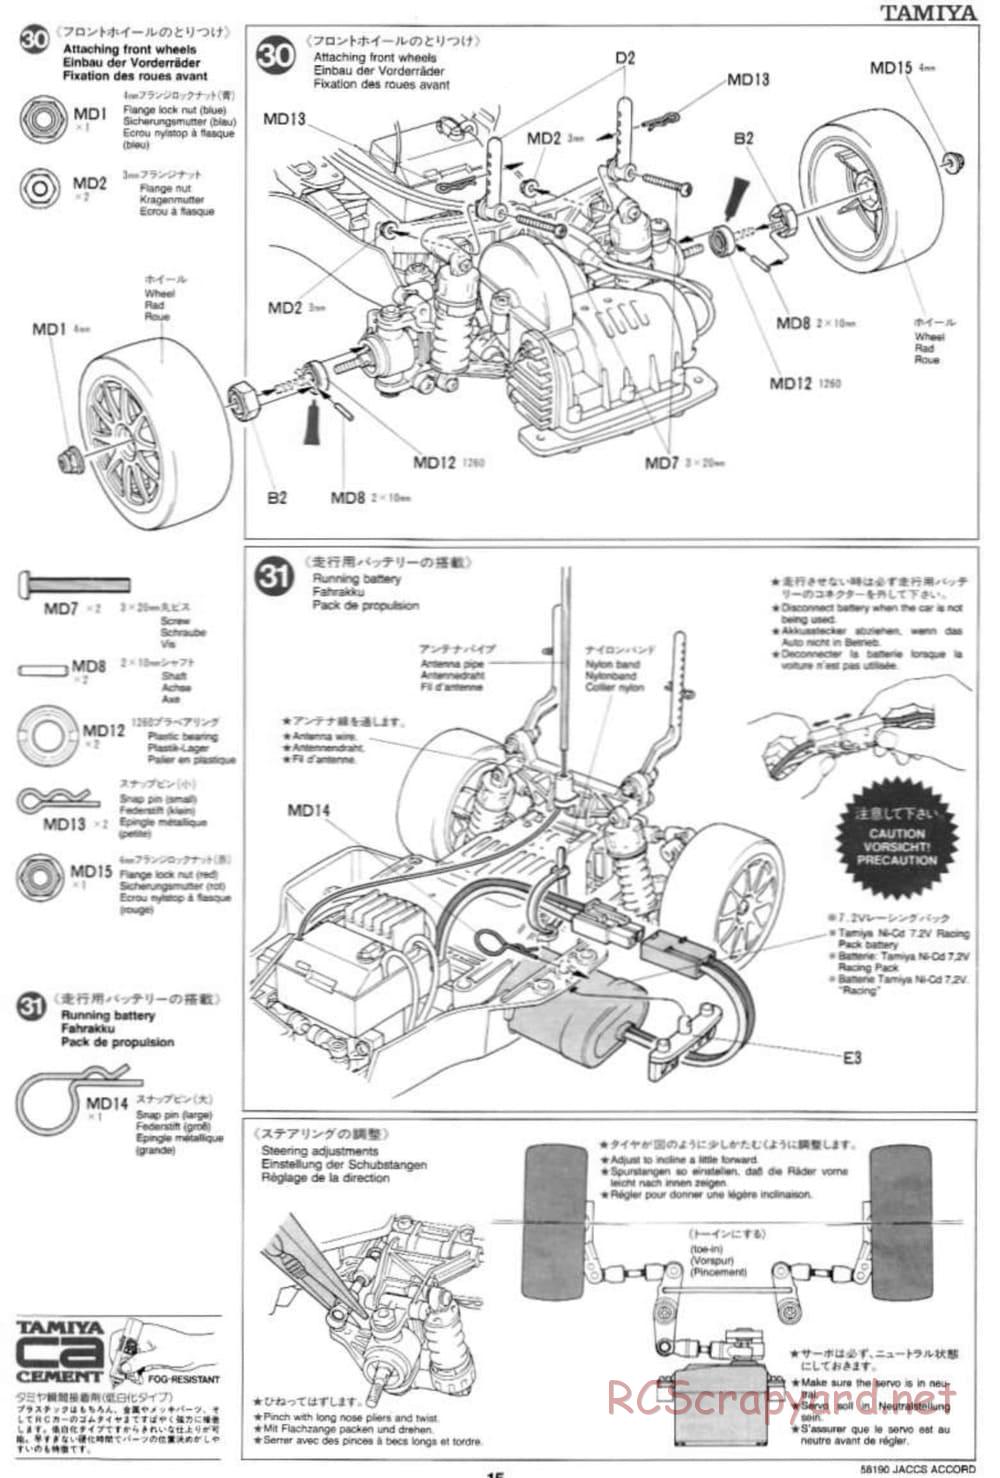 Tamiya - JACCS Honda Accord - FF-01 Chassis - Manual - Page 15